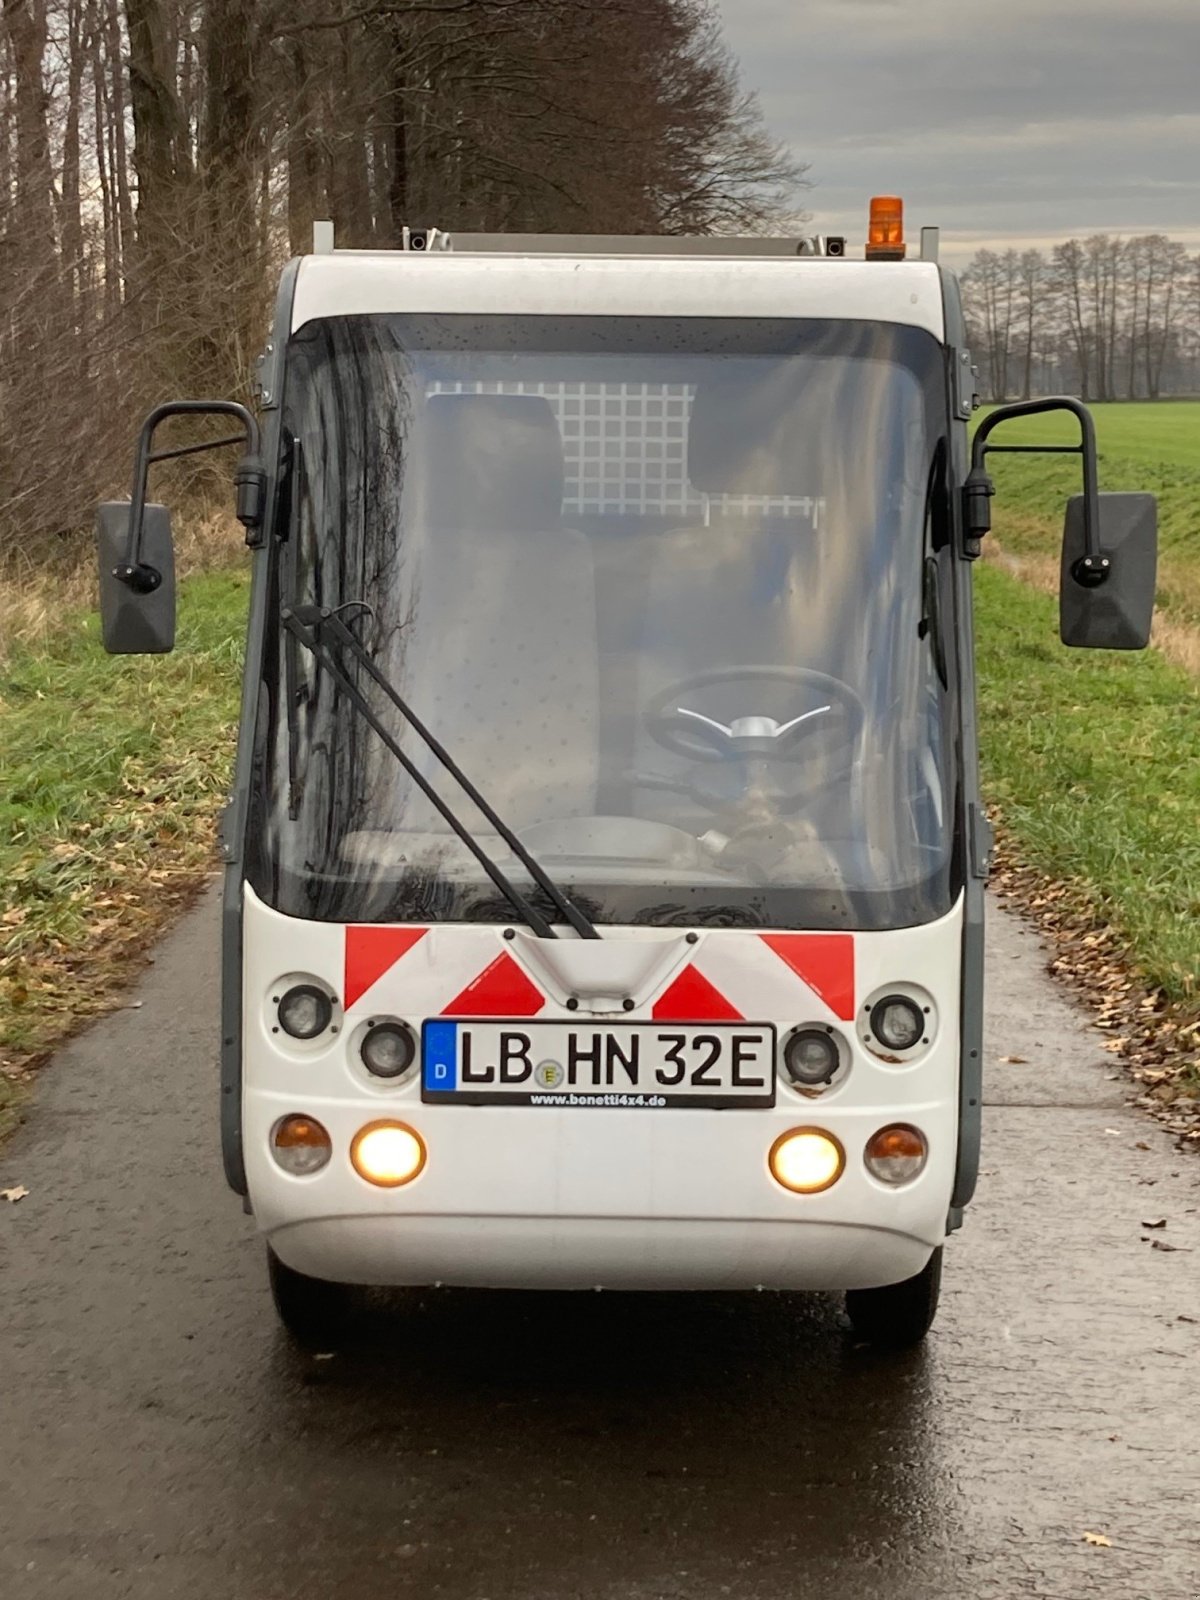 Kommunalfahrzeug des Typs Esagono mini E-truck Gastone, Gebrauchtmaschine in Wedemark (Bild 2)